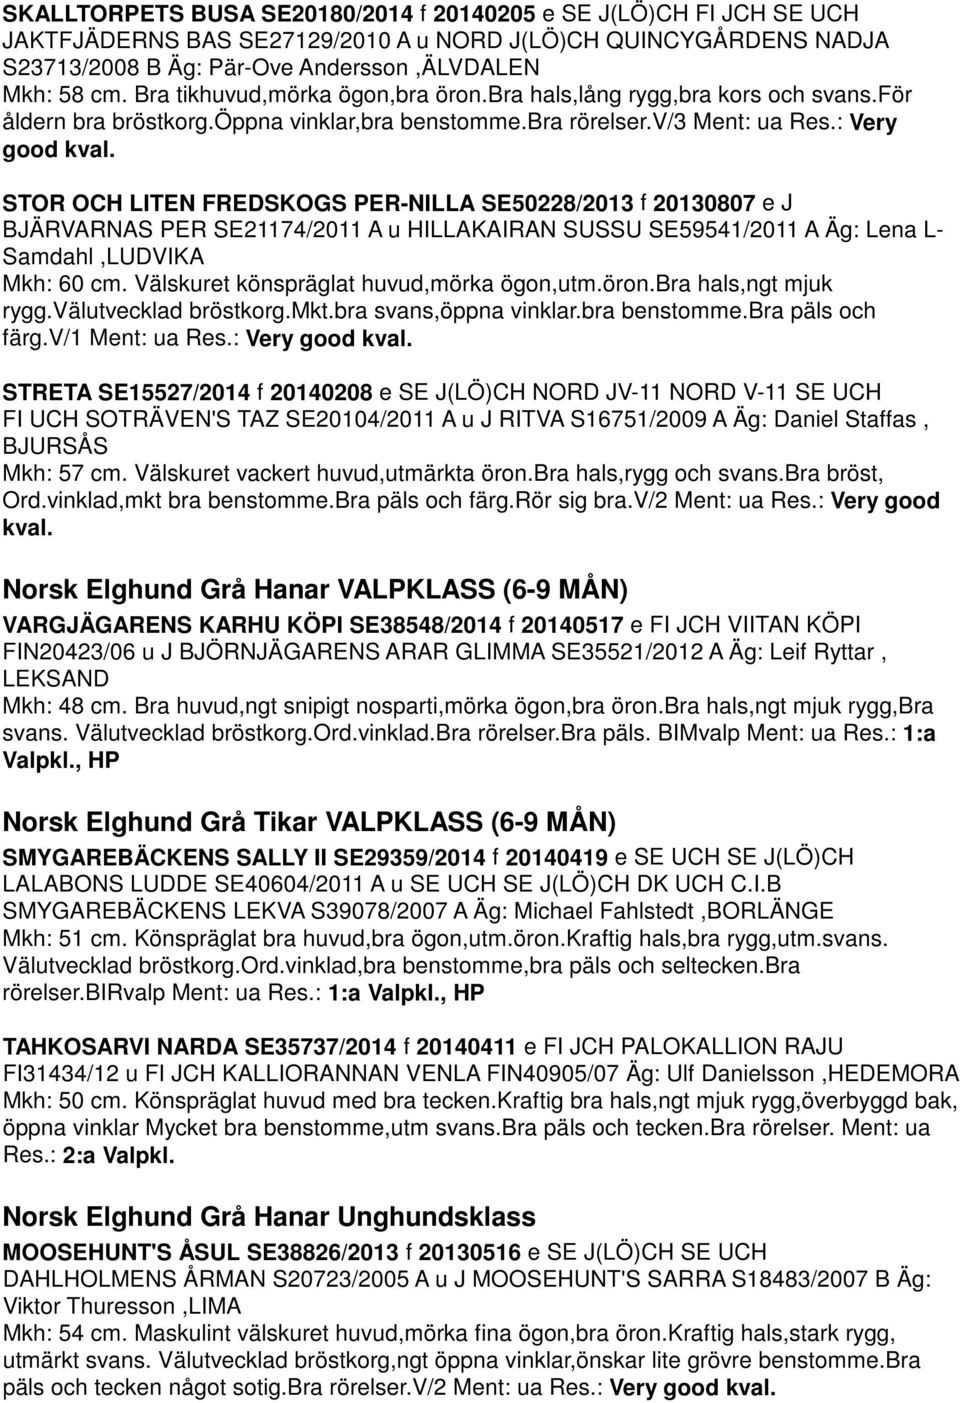 STOR OCH LITEN FREDSKOGS PER-NILLA SE50228/2013 f 20130807 e J BJÄRVARNAS PER SE21174/2011 A u HILLAKAIRAN SUSSU SE59541/2011 A Äg: Lena L- Samdahl,LUDVIKA Mkh: 60 cm.